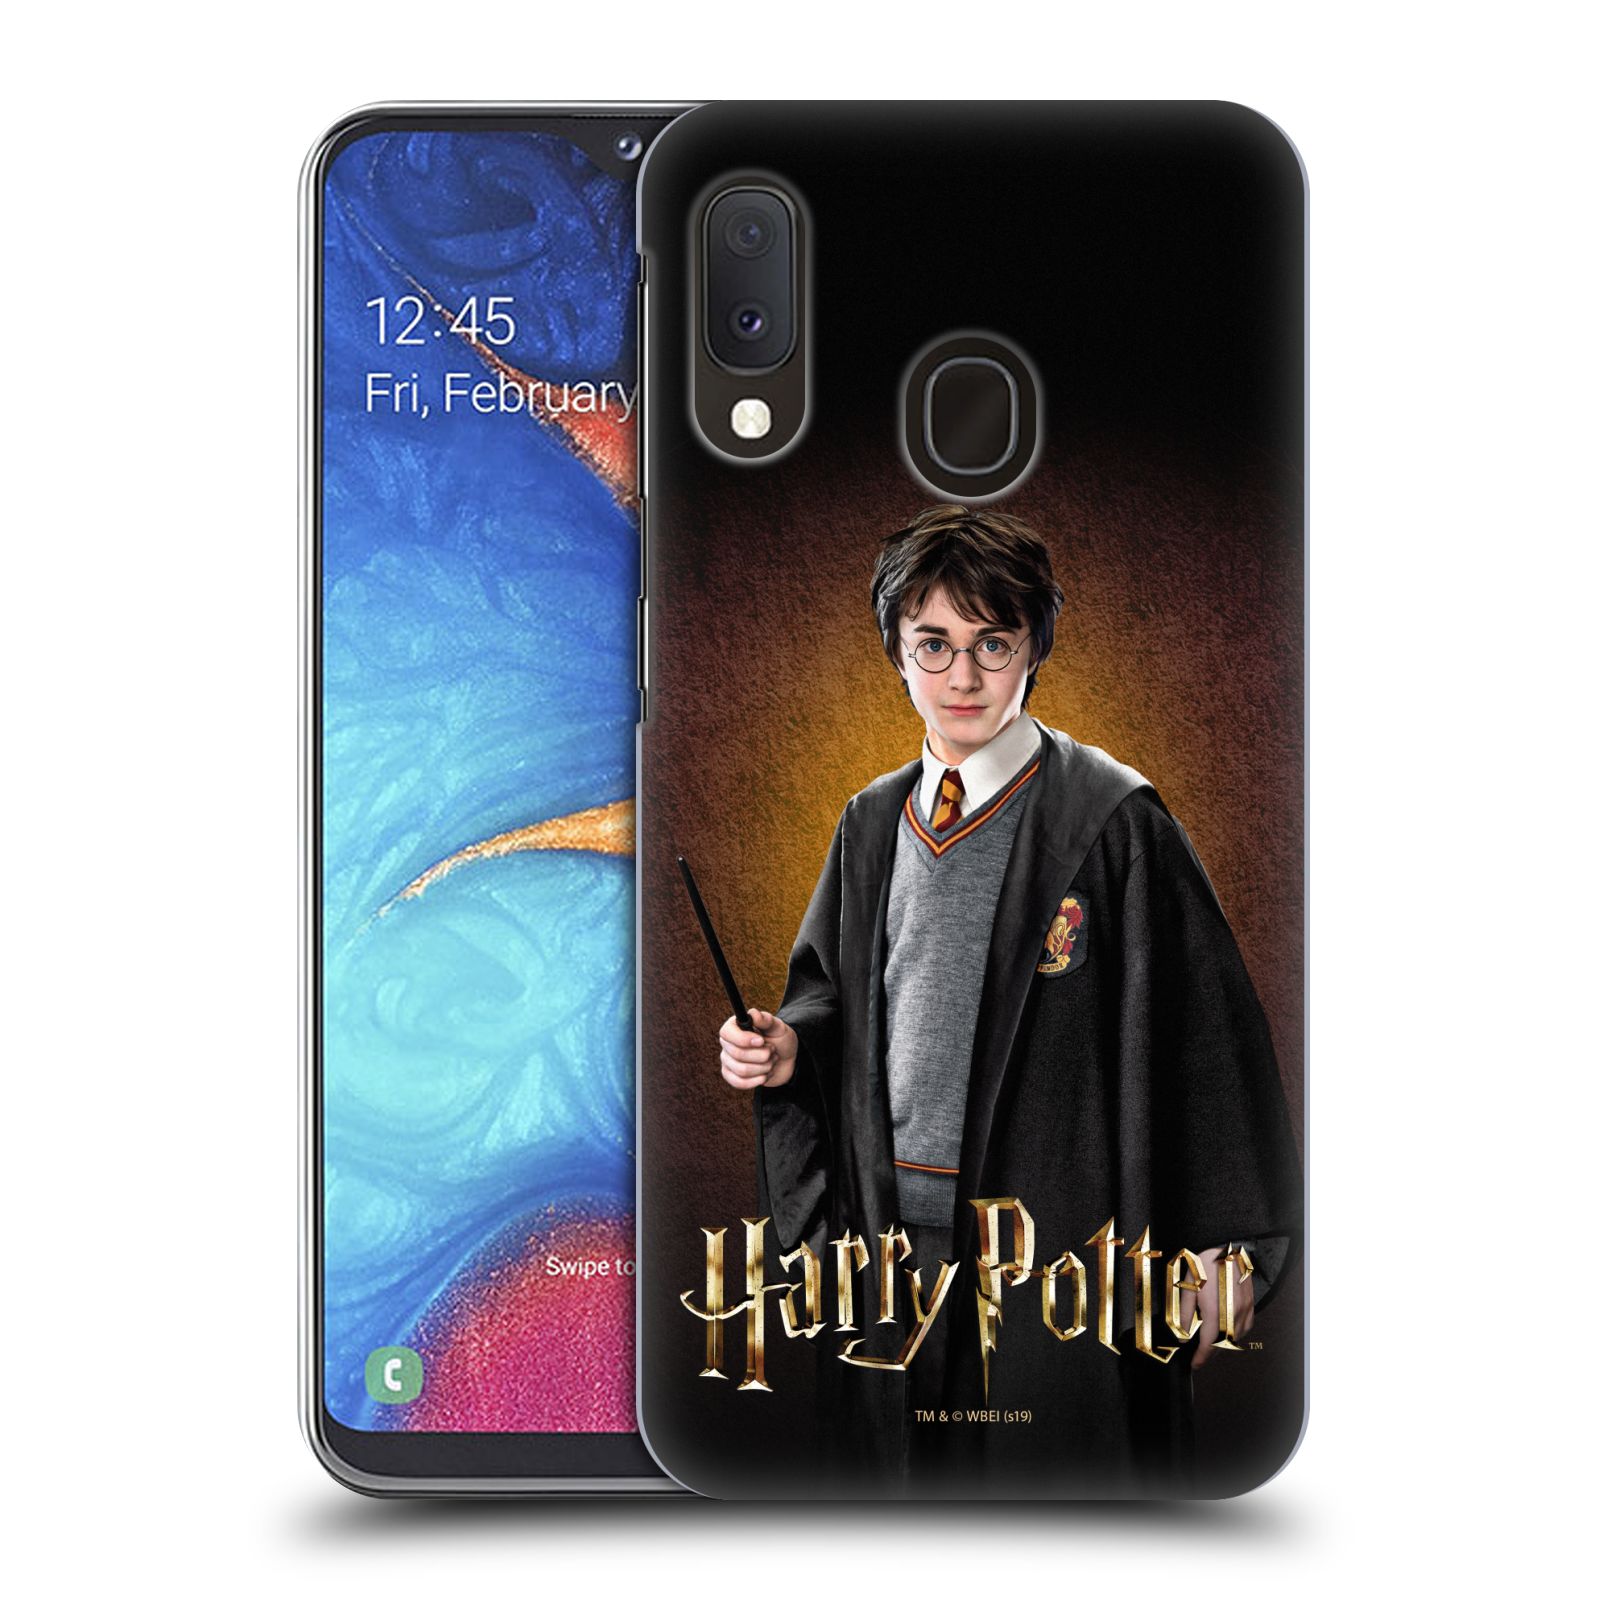 Plastové pouzdro na mobil Samsung Galaxy A20e - Harry Potter - Malý Harry Potter (Plastový kryt, pouzdro, obal na mobilní telefon Samsung Galaxy A20e A202F Dual SIM s licencovaným motivem Harry Potter - Malý Harry Potter)